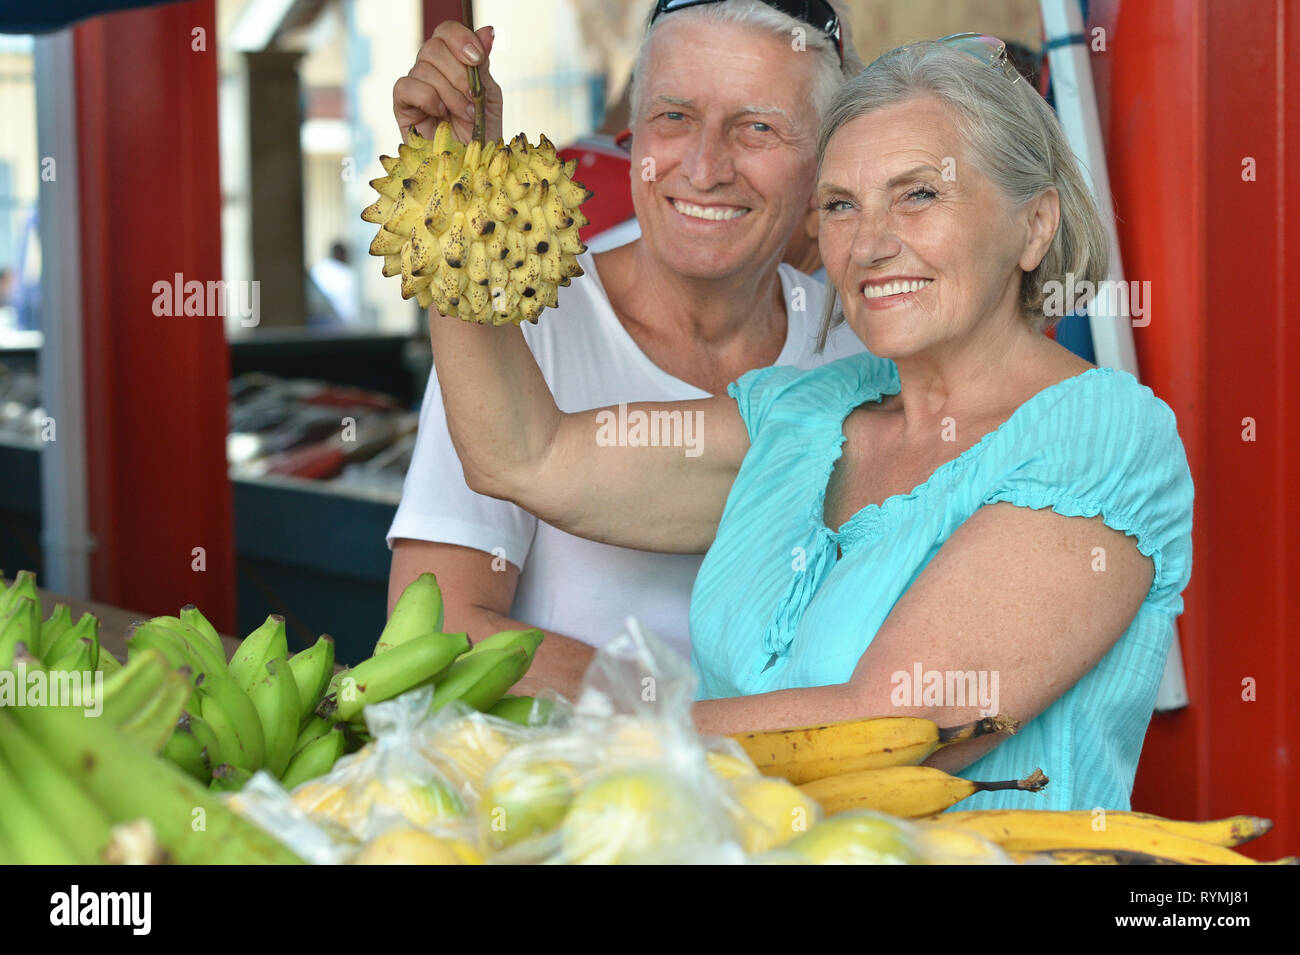 Portrait of beautiful smiling couple de personnes âgées dans le marché Banque D'Images